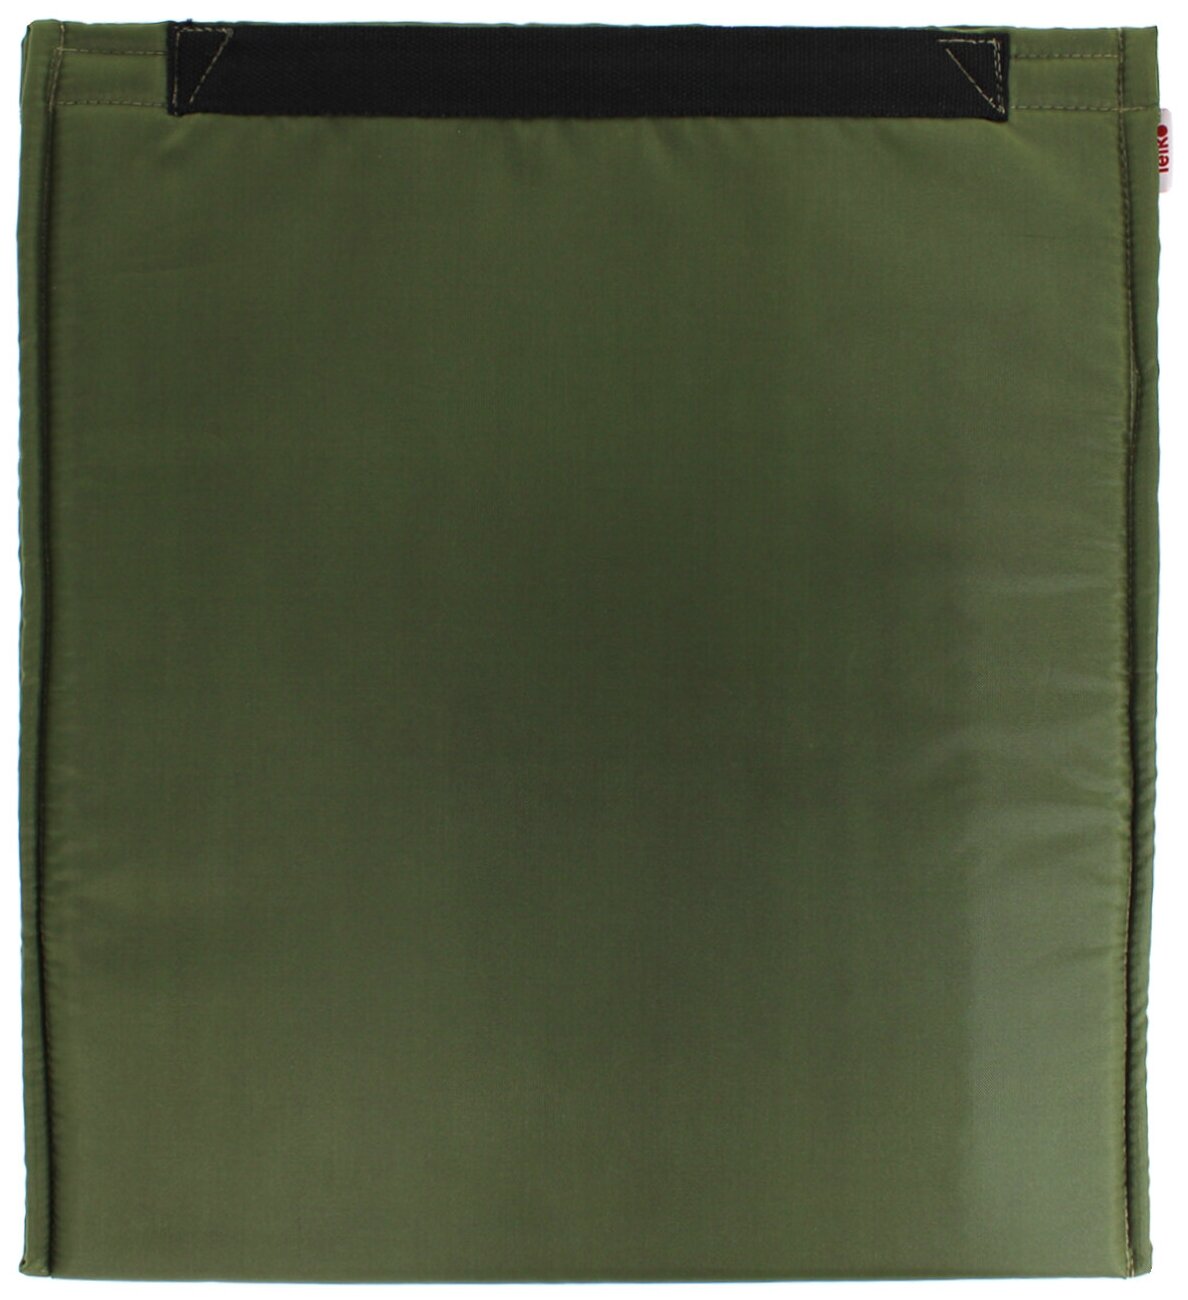 Термосумка-вставка для шоппера, сумки, рюкзака (зеленый)